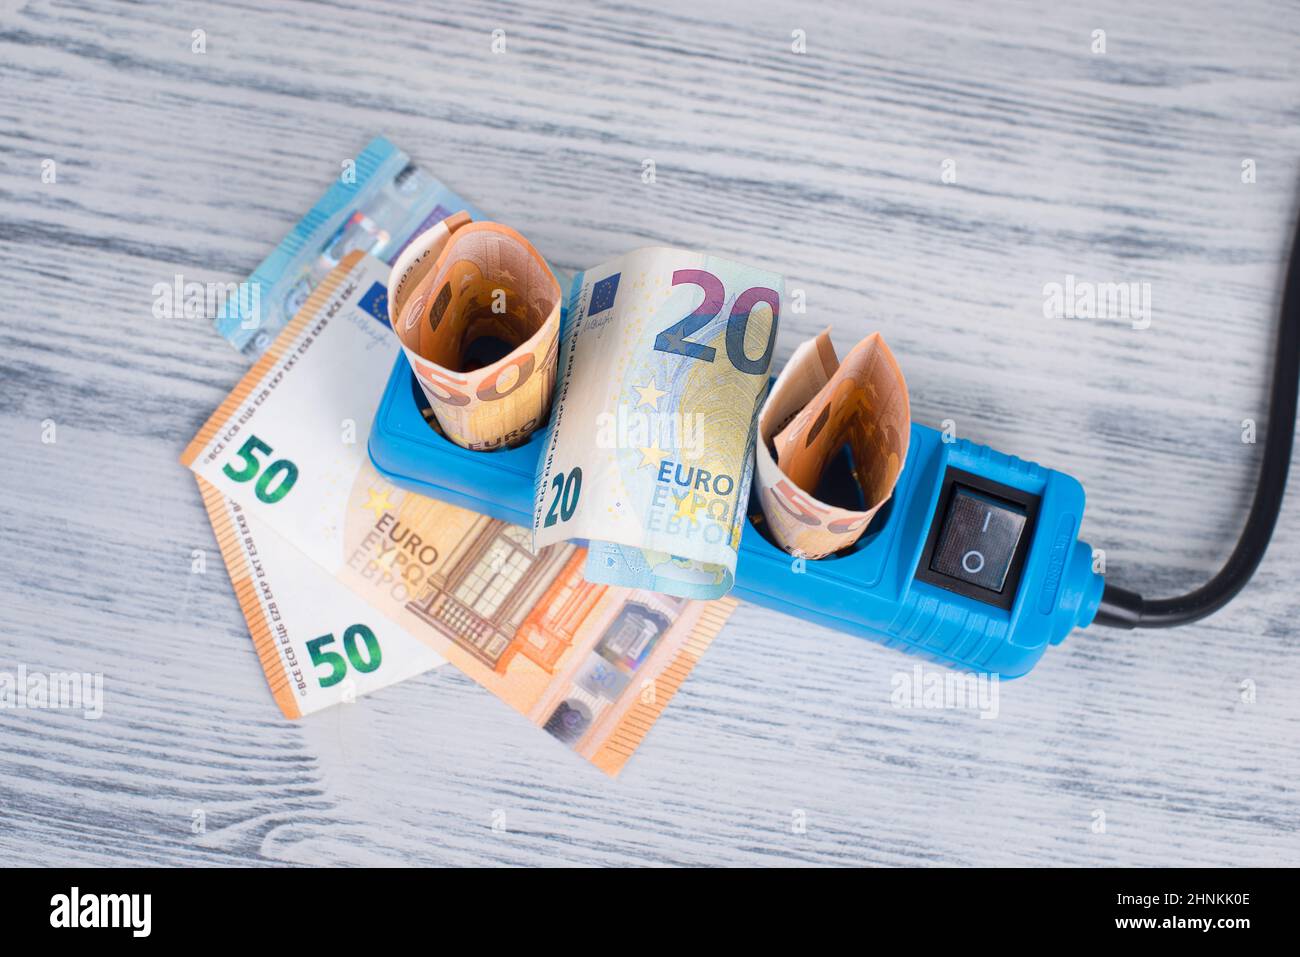 Billetes en euros en una toma de corriente, precios en alza, electricidad verde cara, Alemania Foto de stock